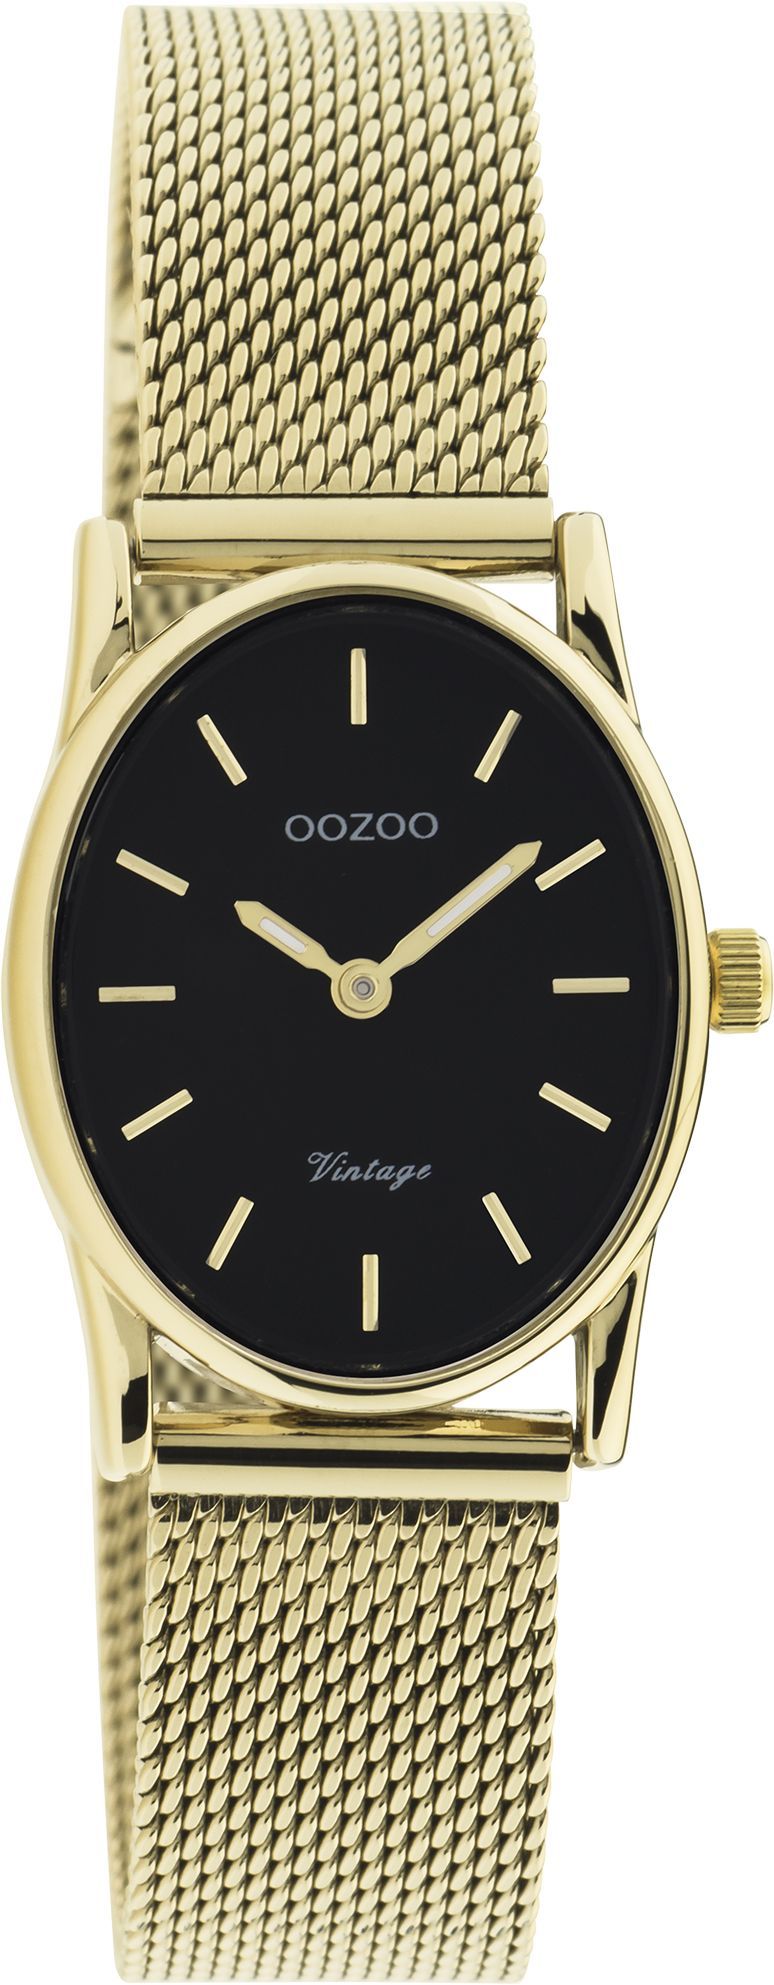 OOZOO Vintage C20259 σε ασημί χρώμα